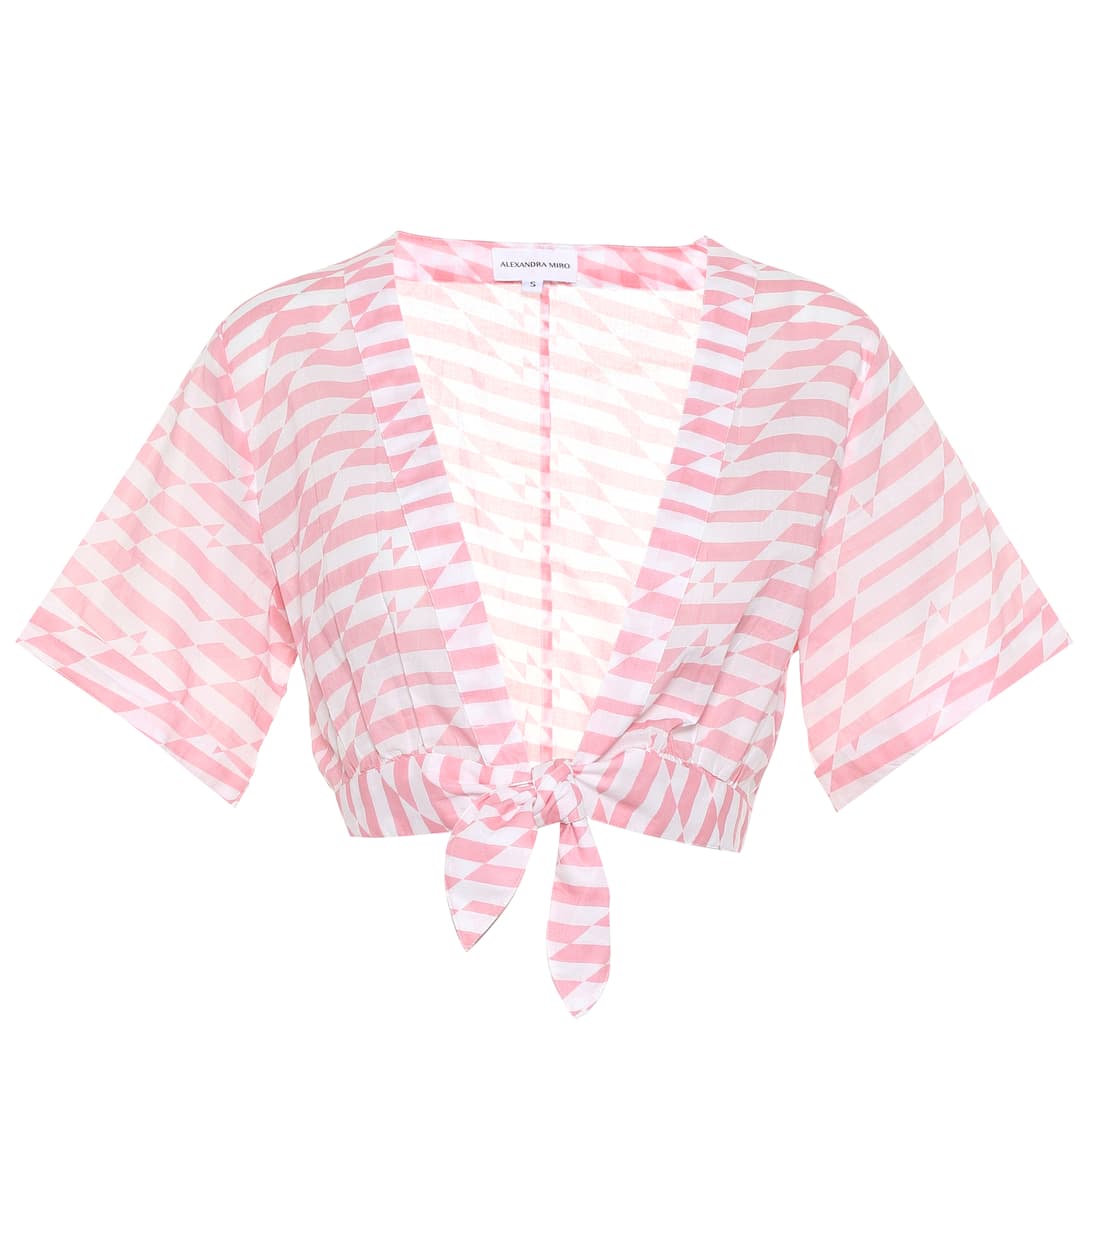 Pink Alexandra Miro Sandy Printed Cotton Crop Top UK XS